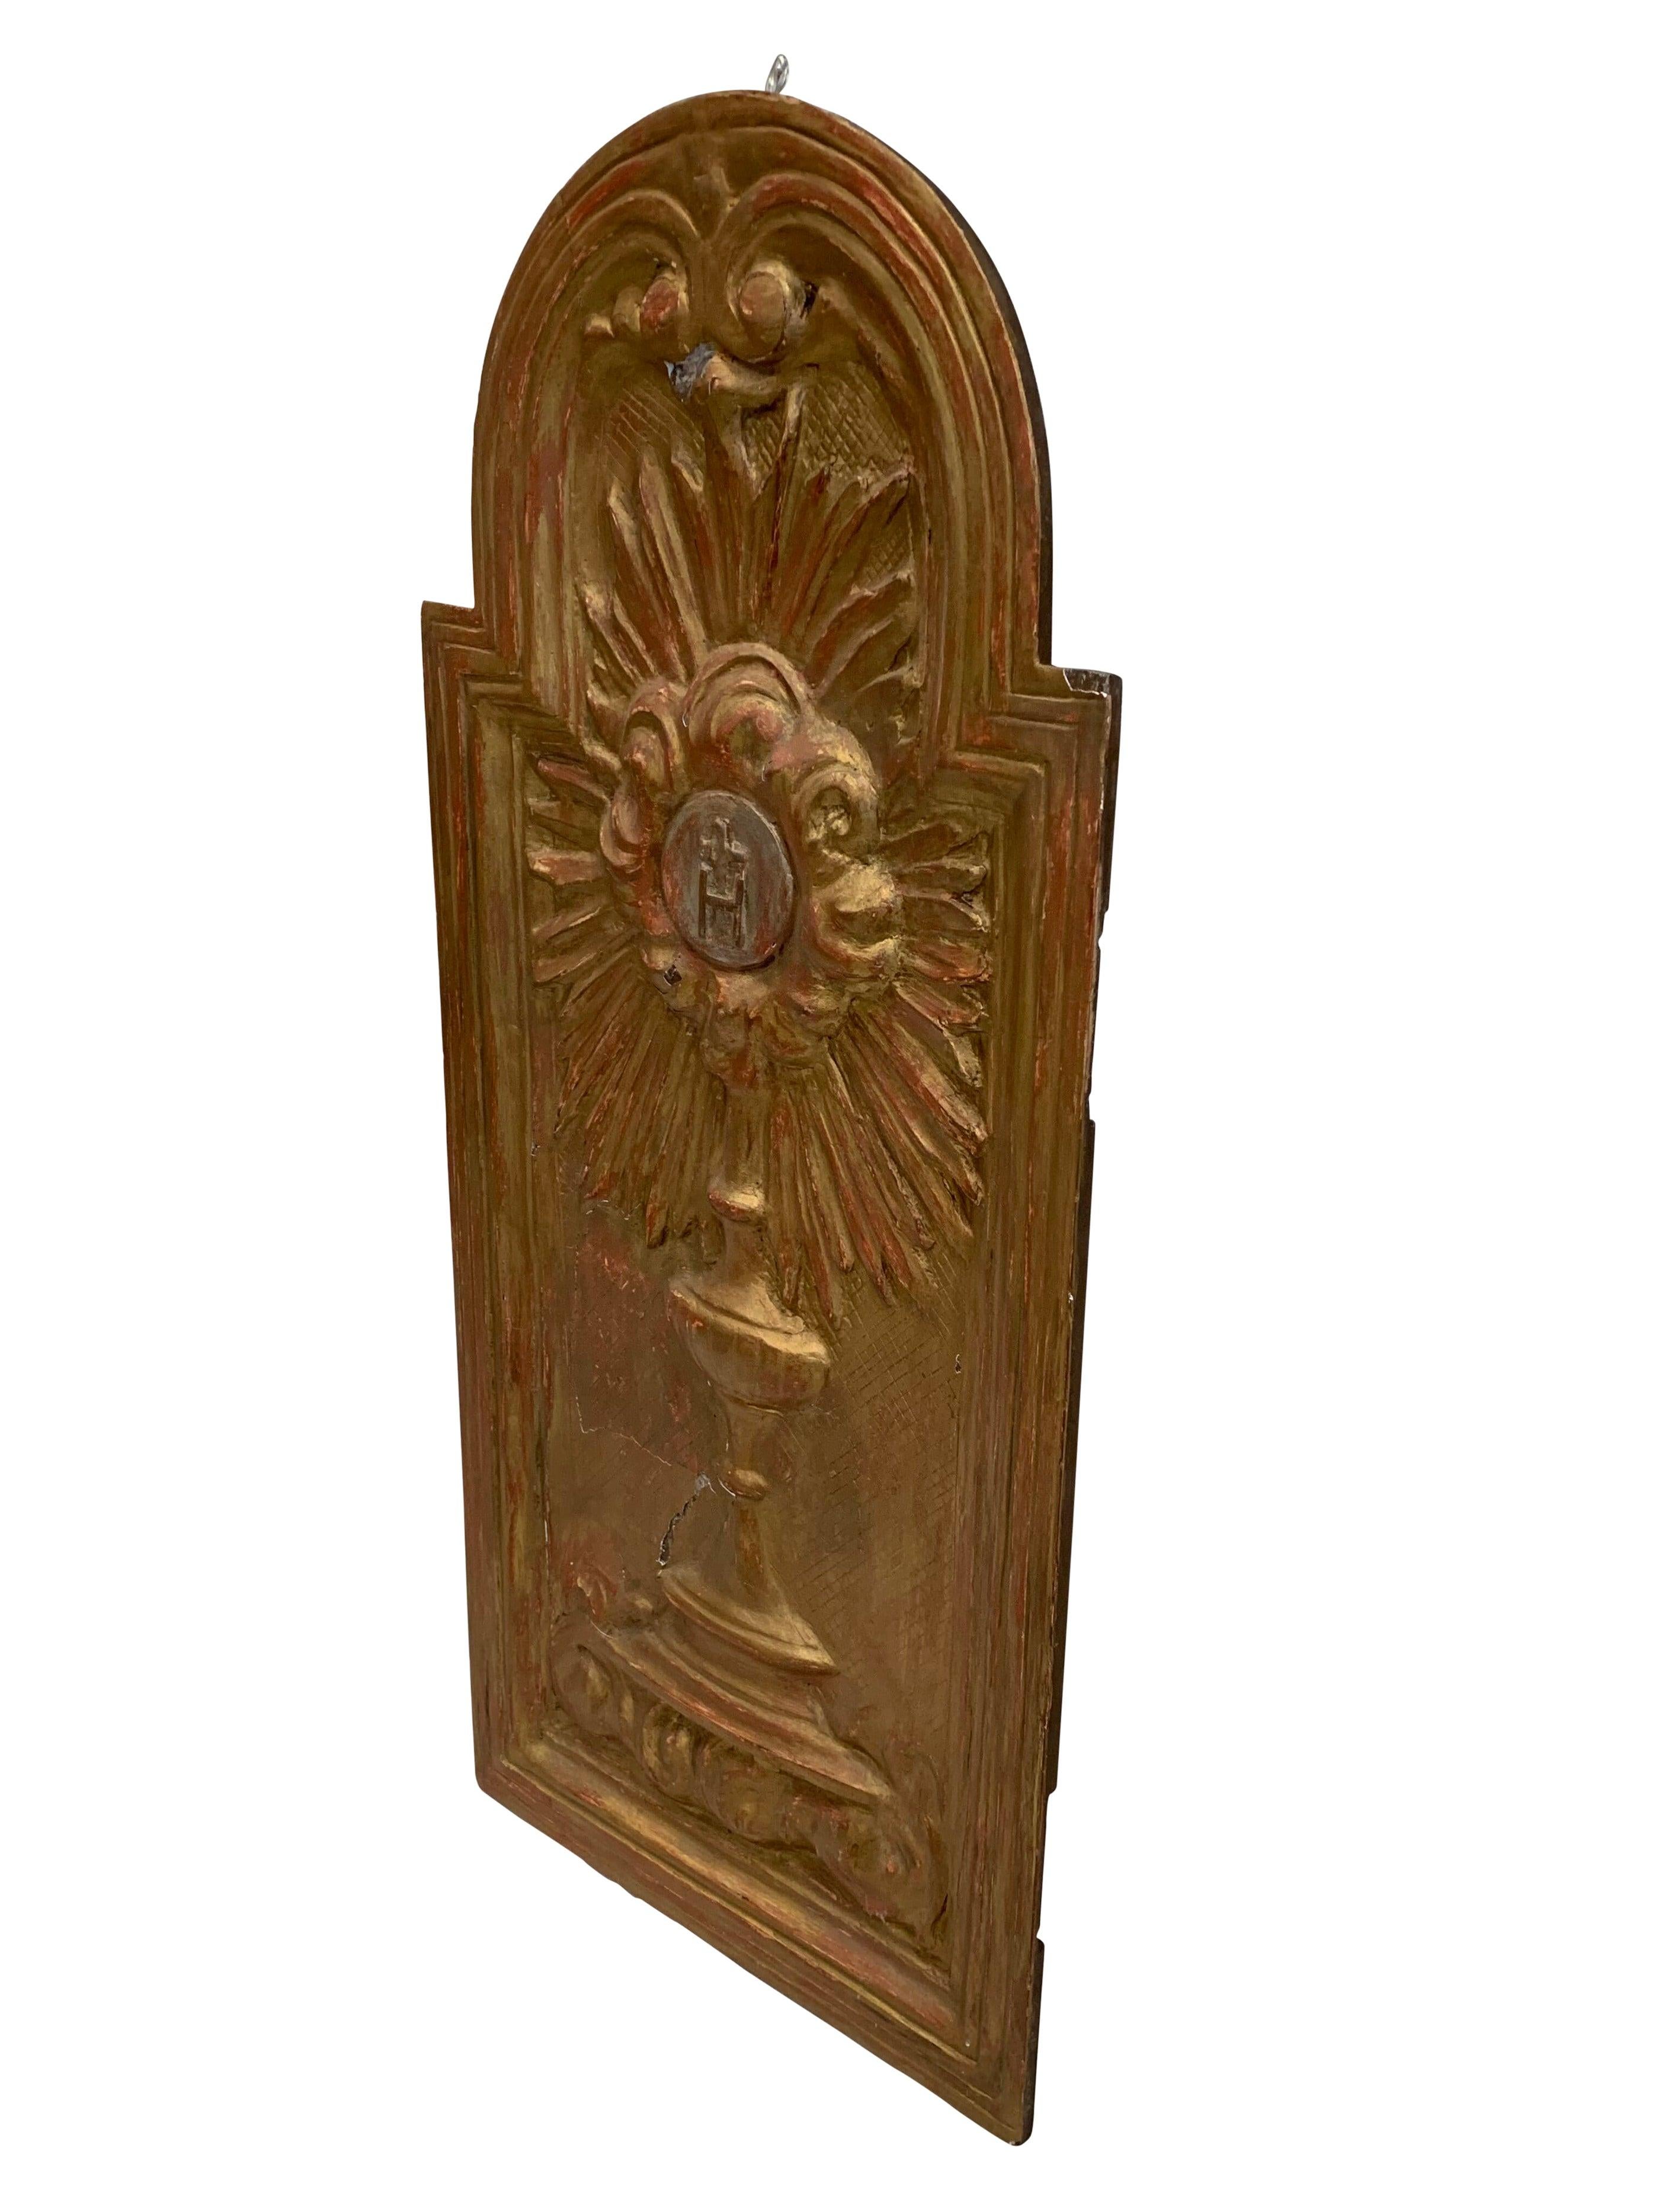 Fragment de porte de tabernacle italien du XVIIIe siècle. Une pièce unique qui peut aller n'importe où. Parfait pour une sculpture sur le mur d'un couloir ou d'une niche.